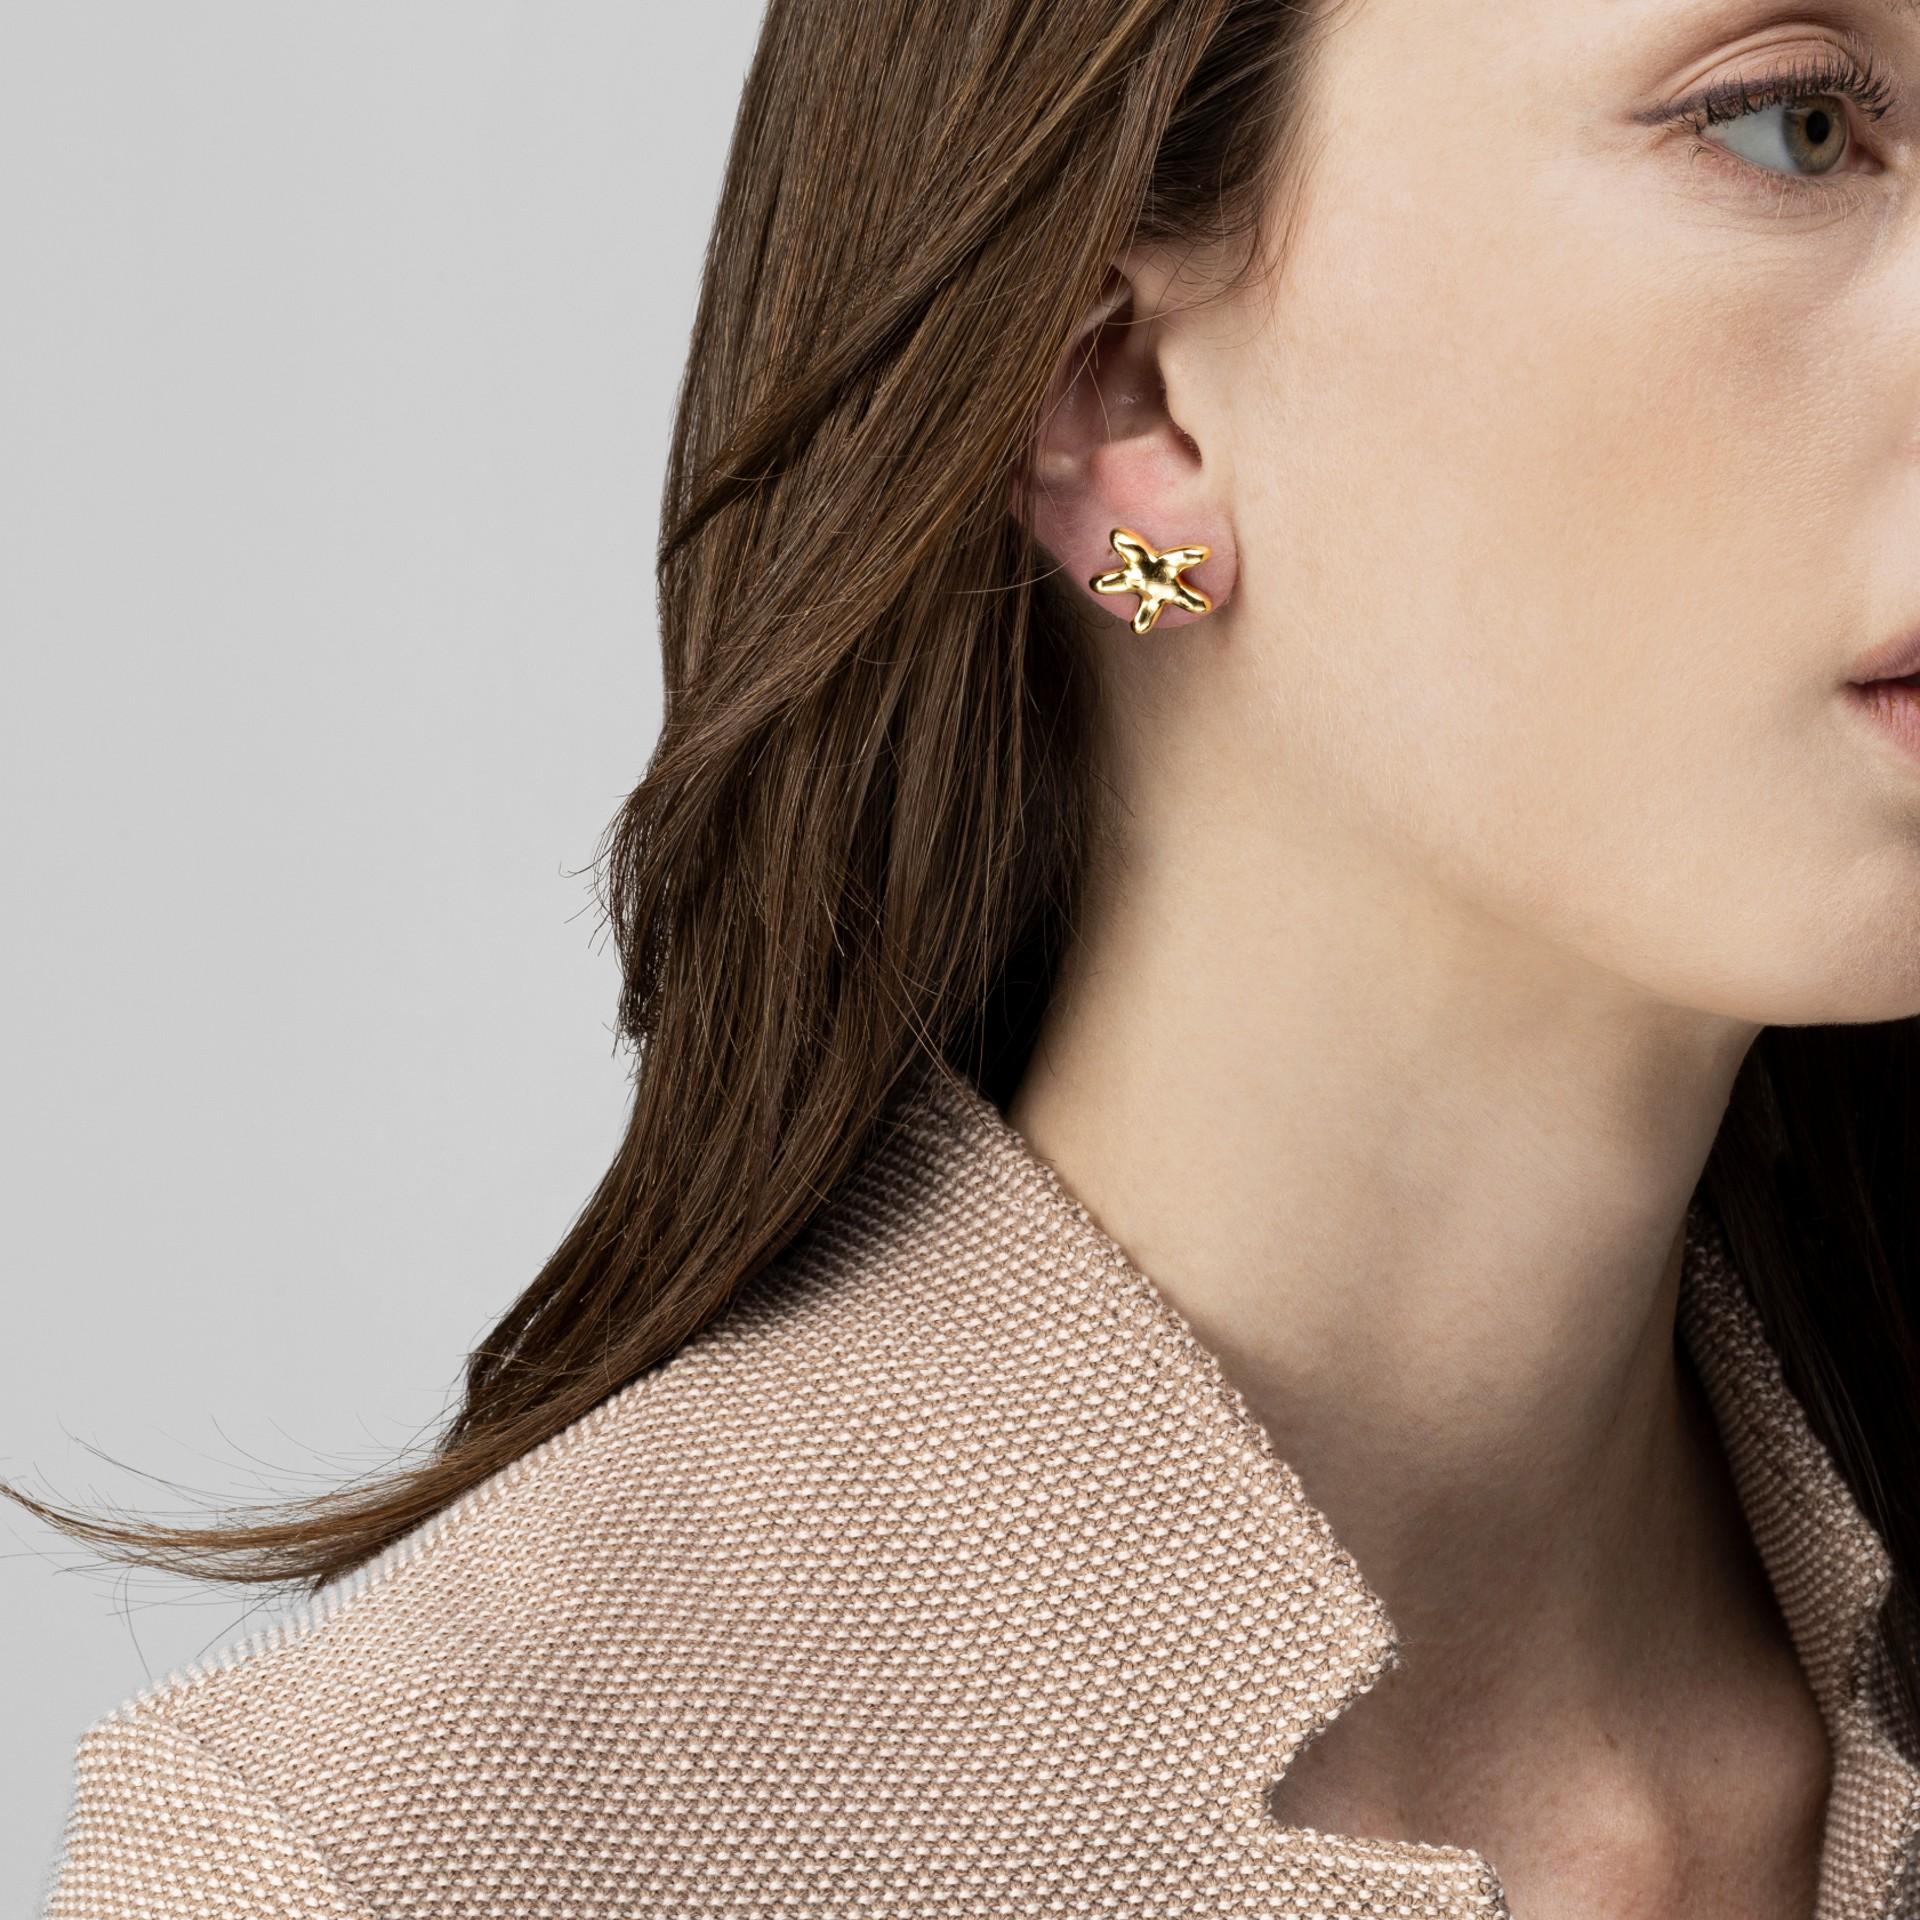 Alex Jona Design-Kollektion, handgefertigt in Italien, Seestern-Ohrringe aus 18 Karat Gelbgold.  

Die Juwelen von Alex Jona zeichnen sich nicht nur durch ihr besonderes Design und die hervorragende Qualität der Edelsteine aus, sondern auch durch